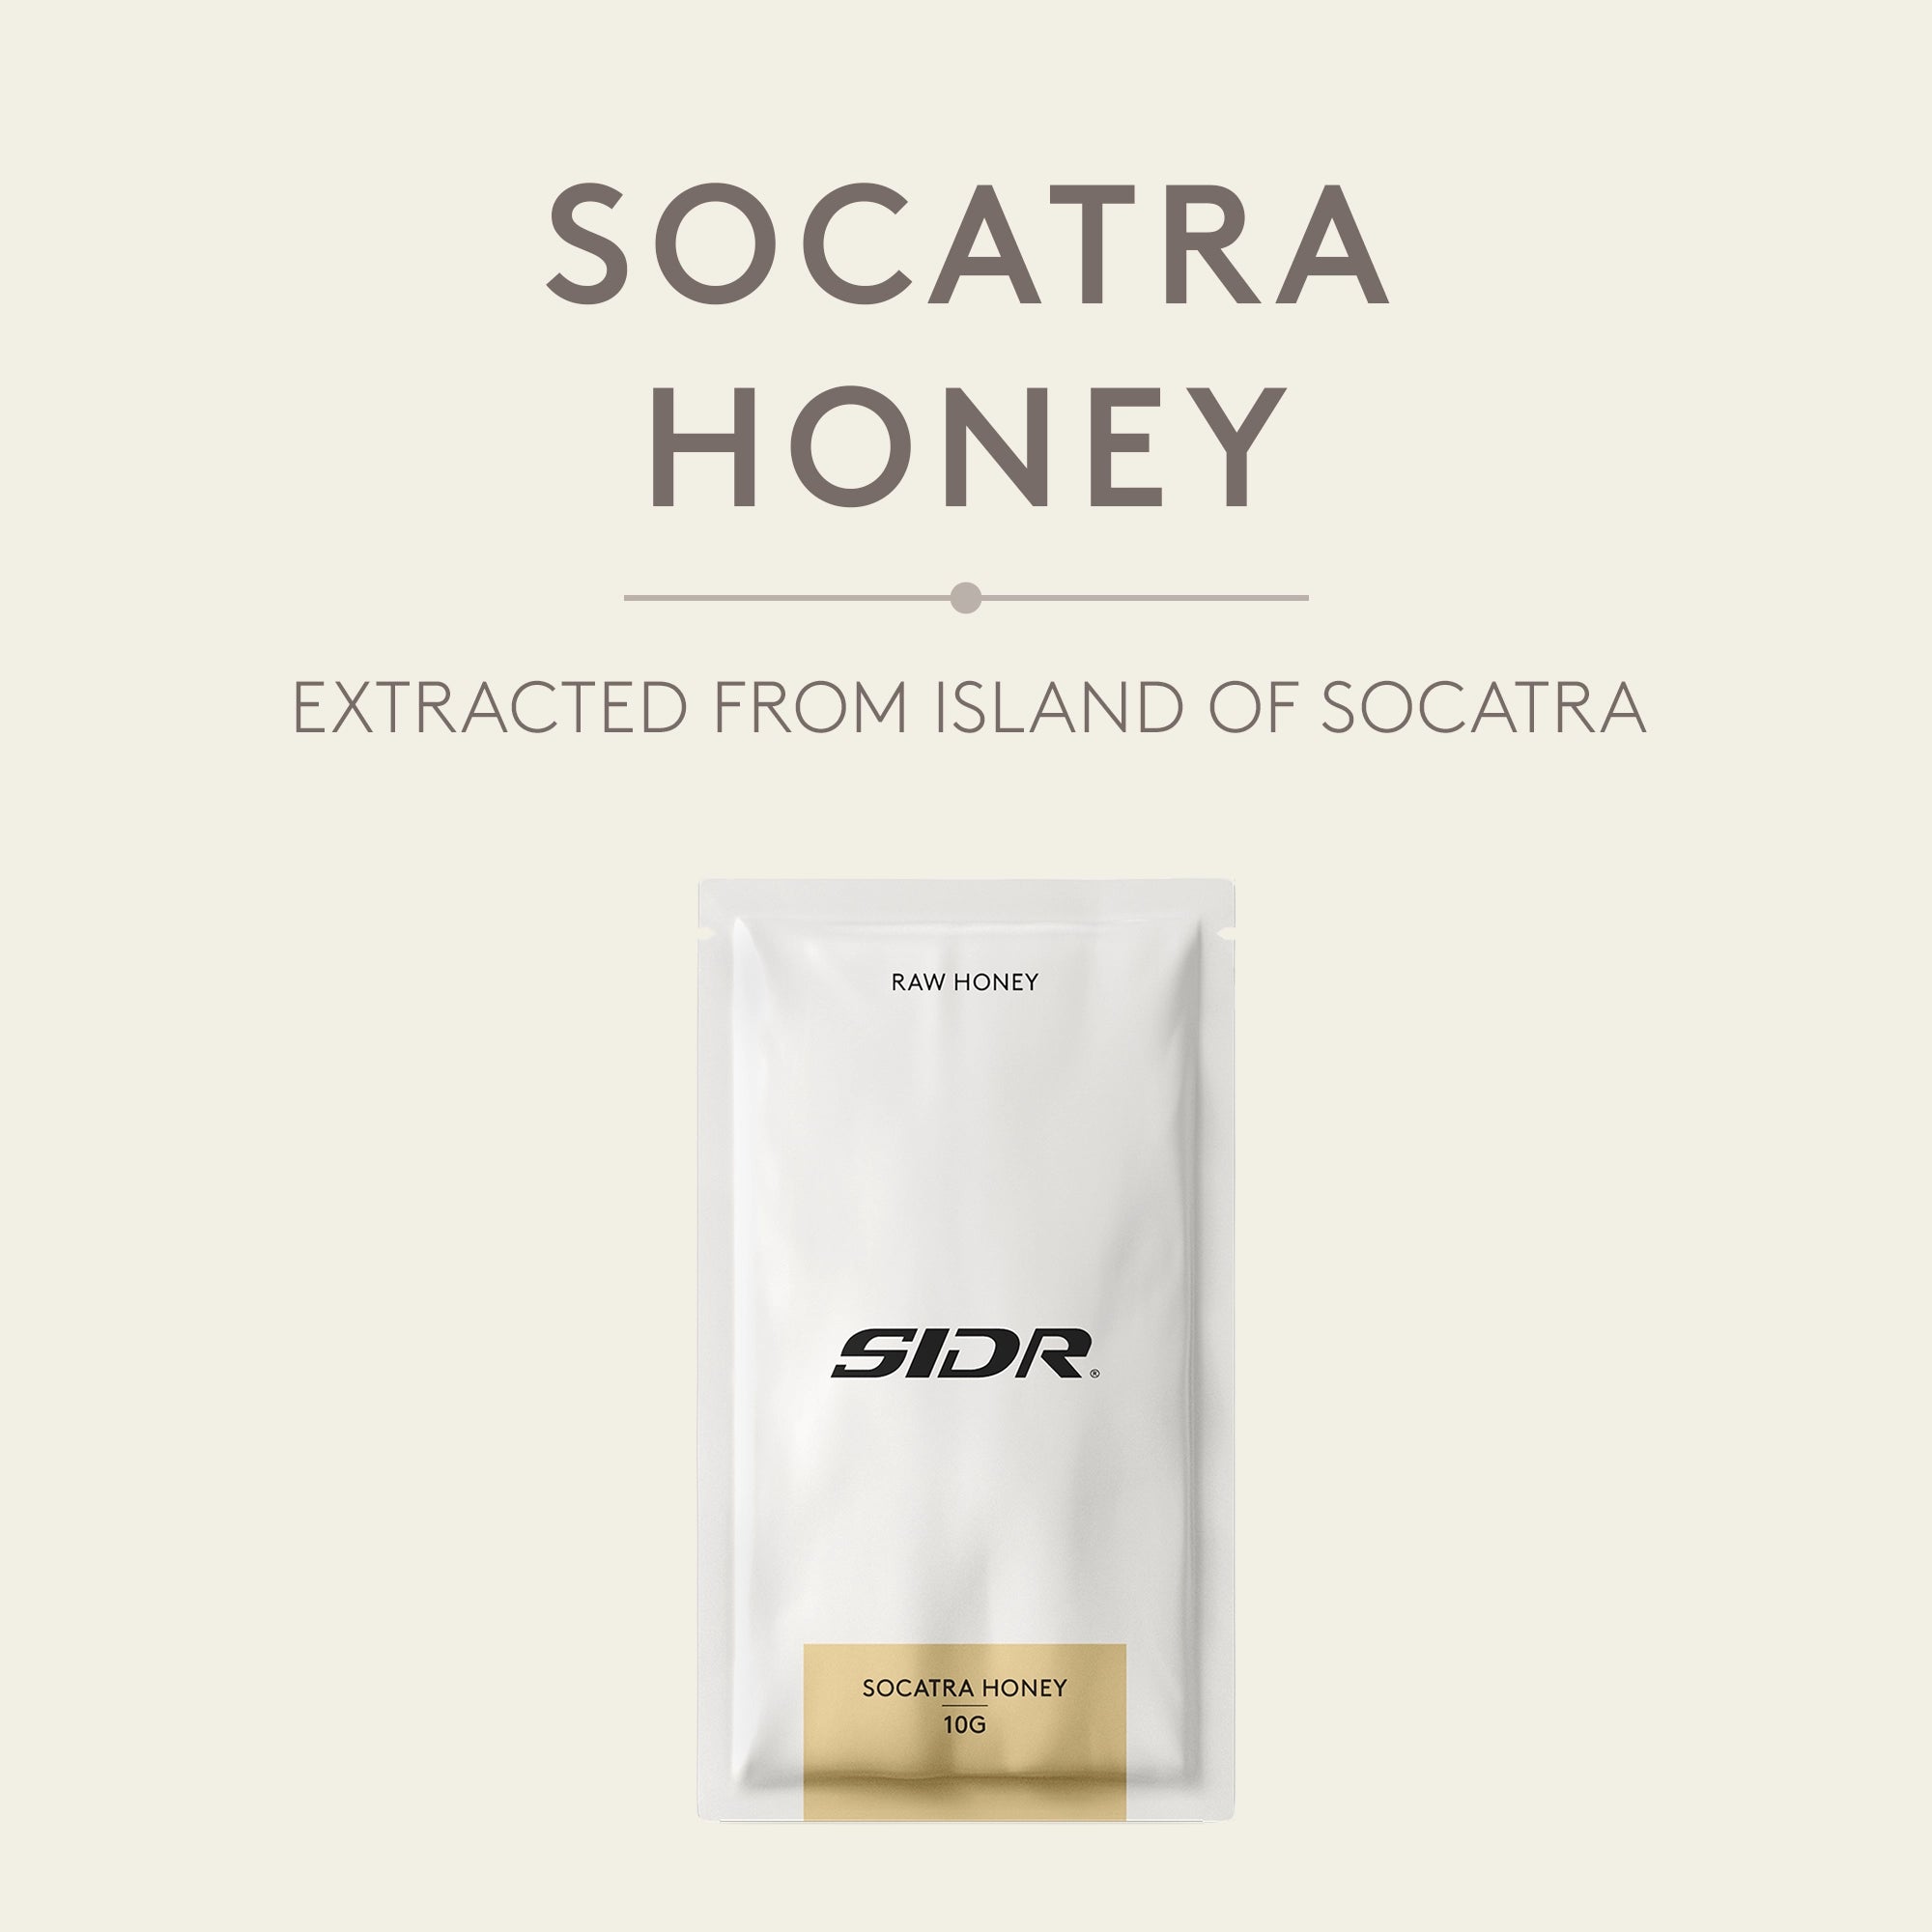 socatra honey packet from island of socatra